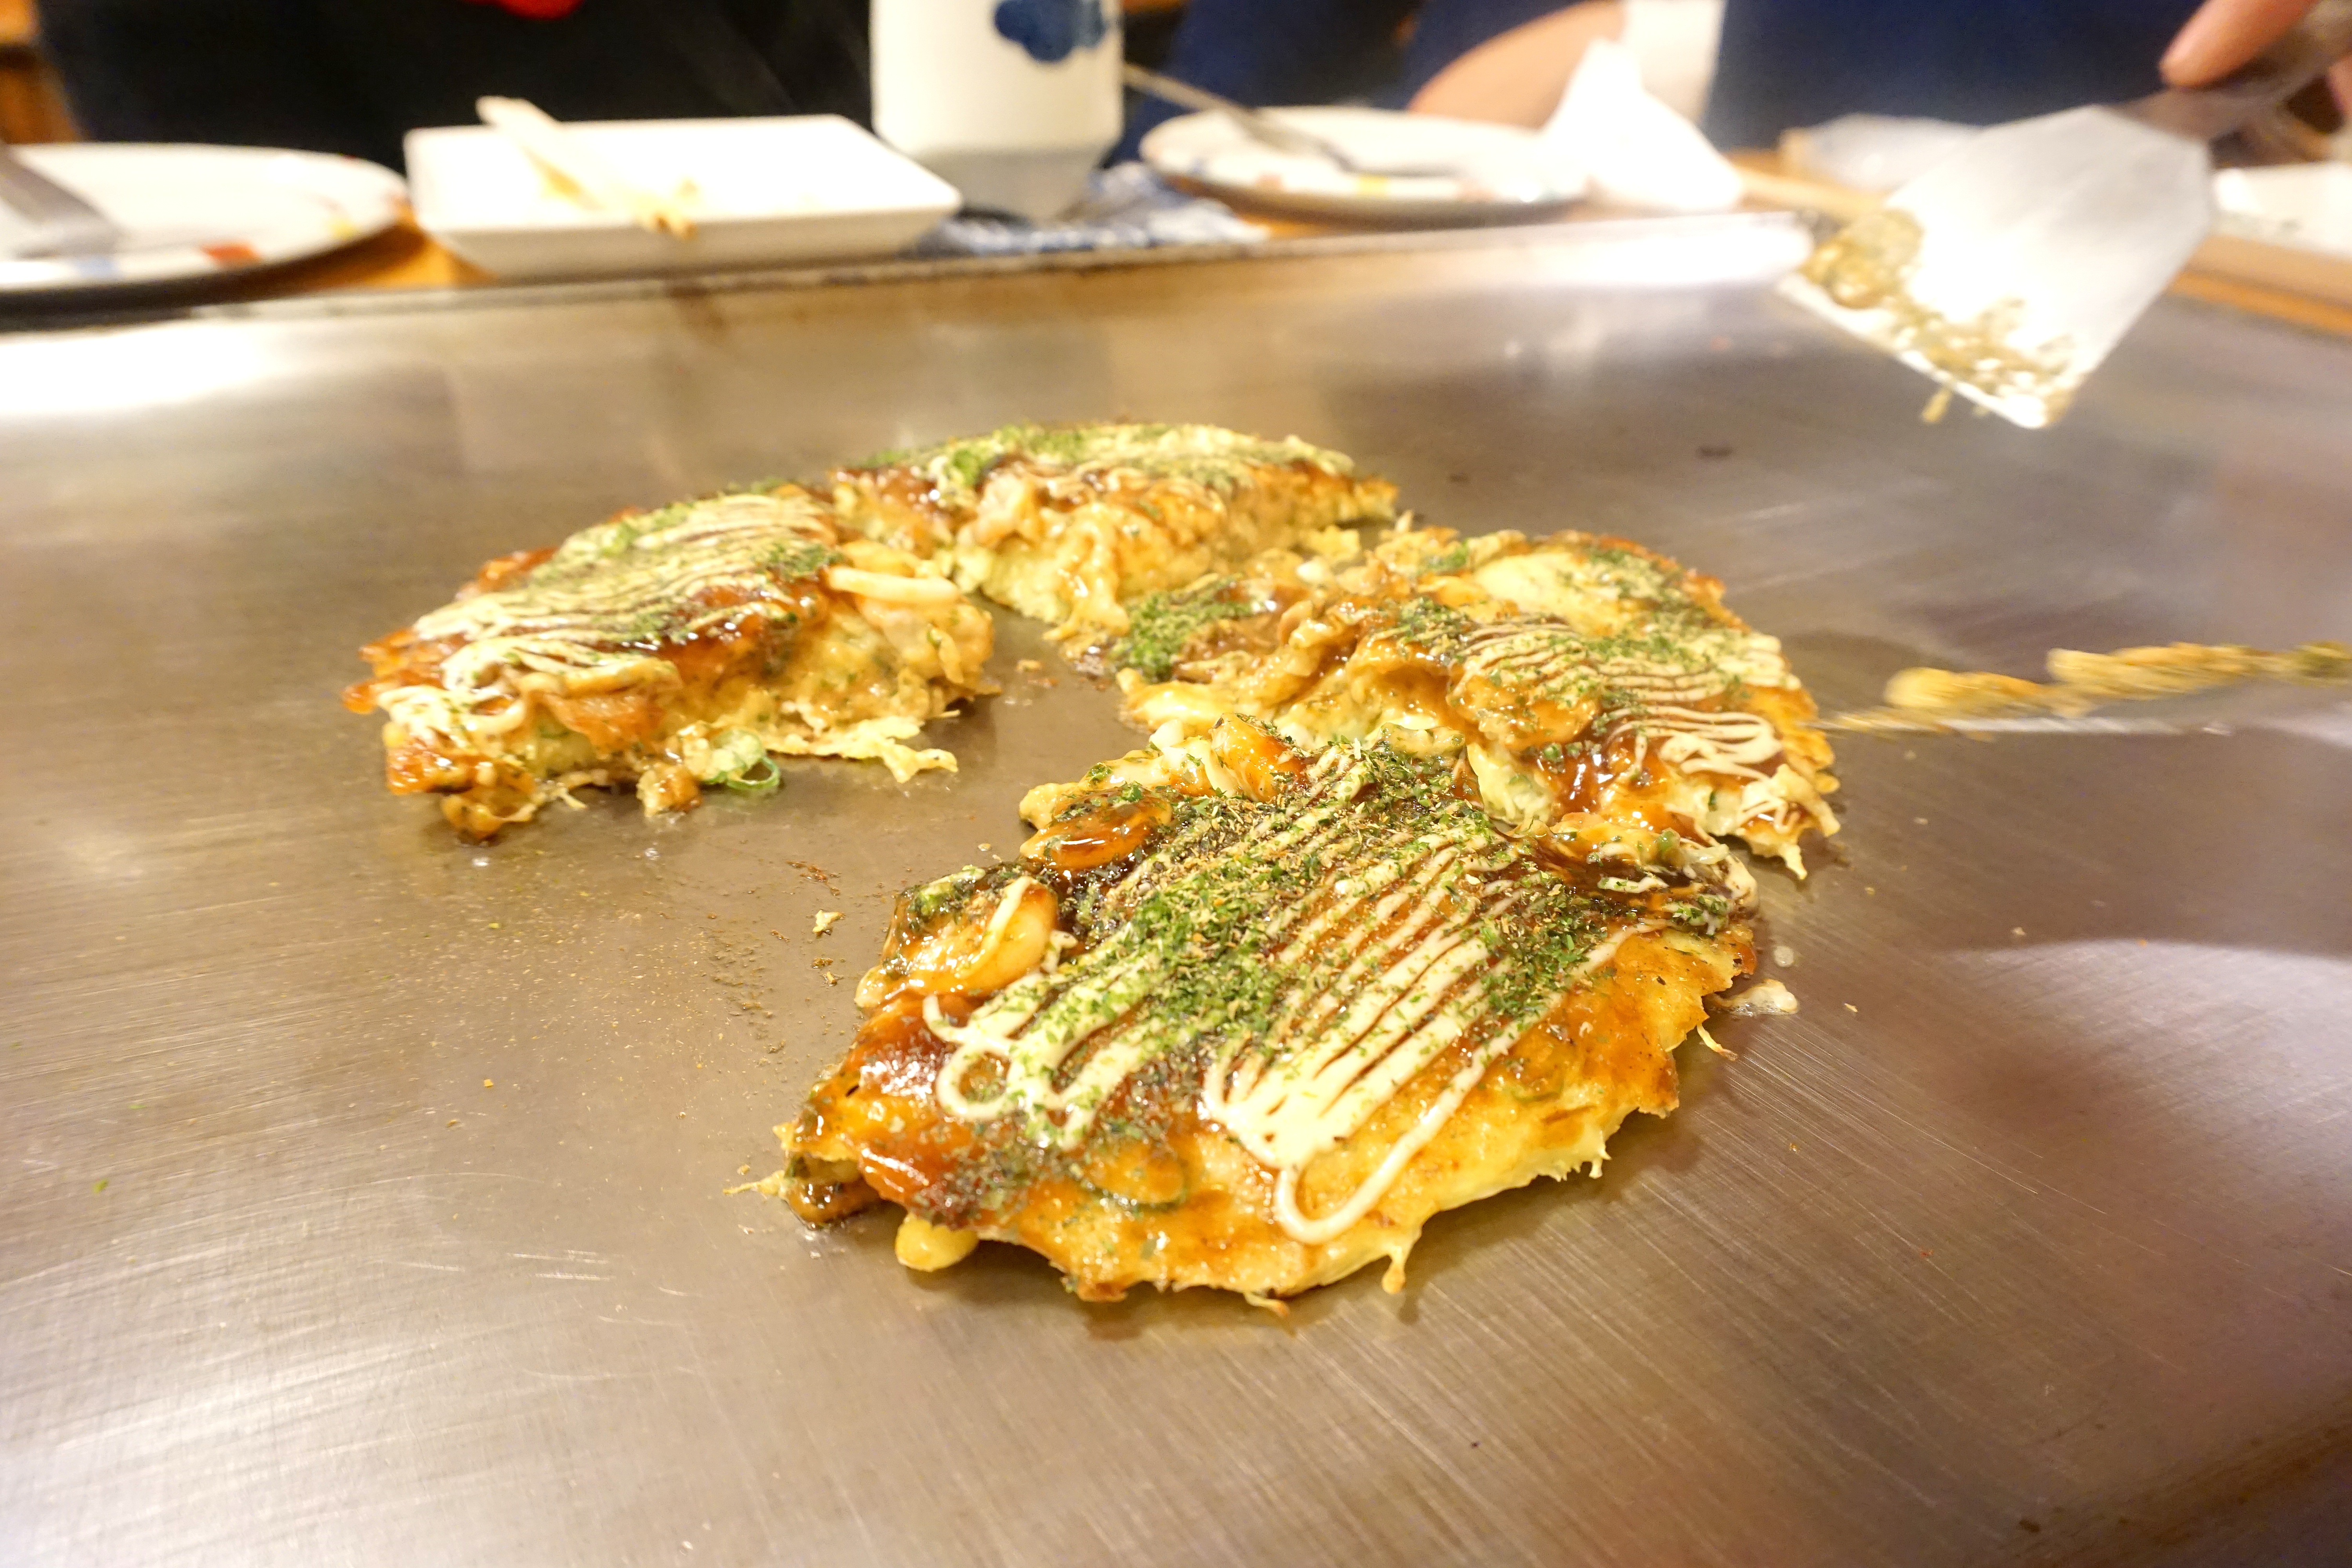 VIAGGIO IN GIAPPONE | Ecco il Miglior Ristorante di Okonomiyaki